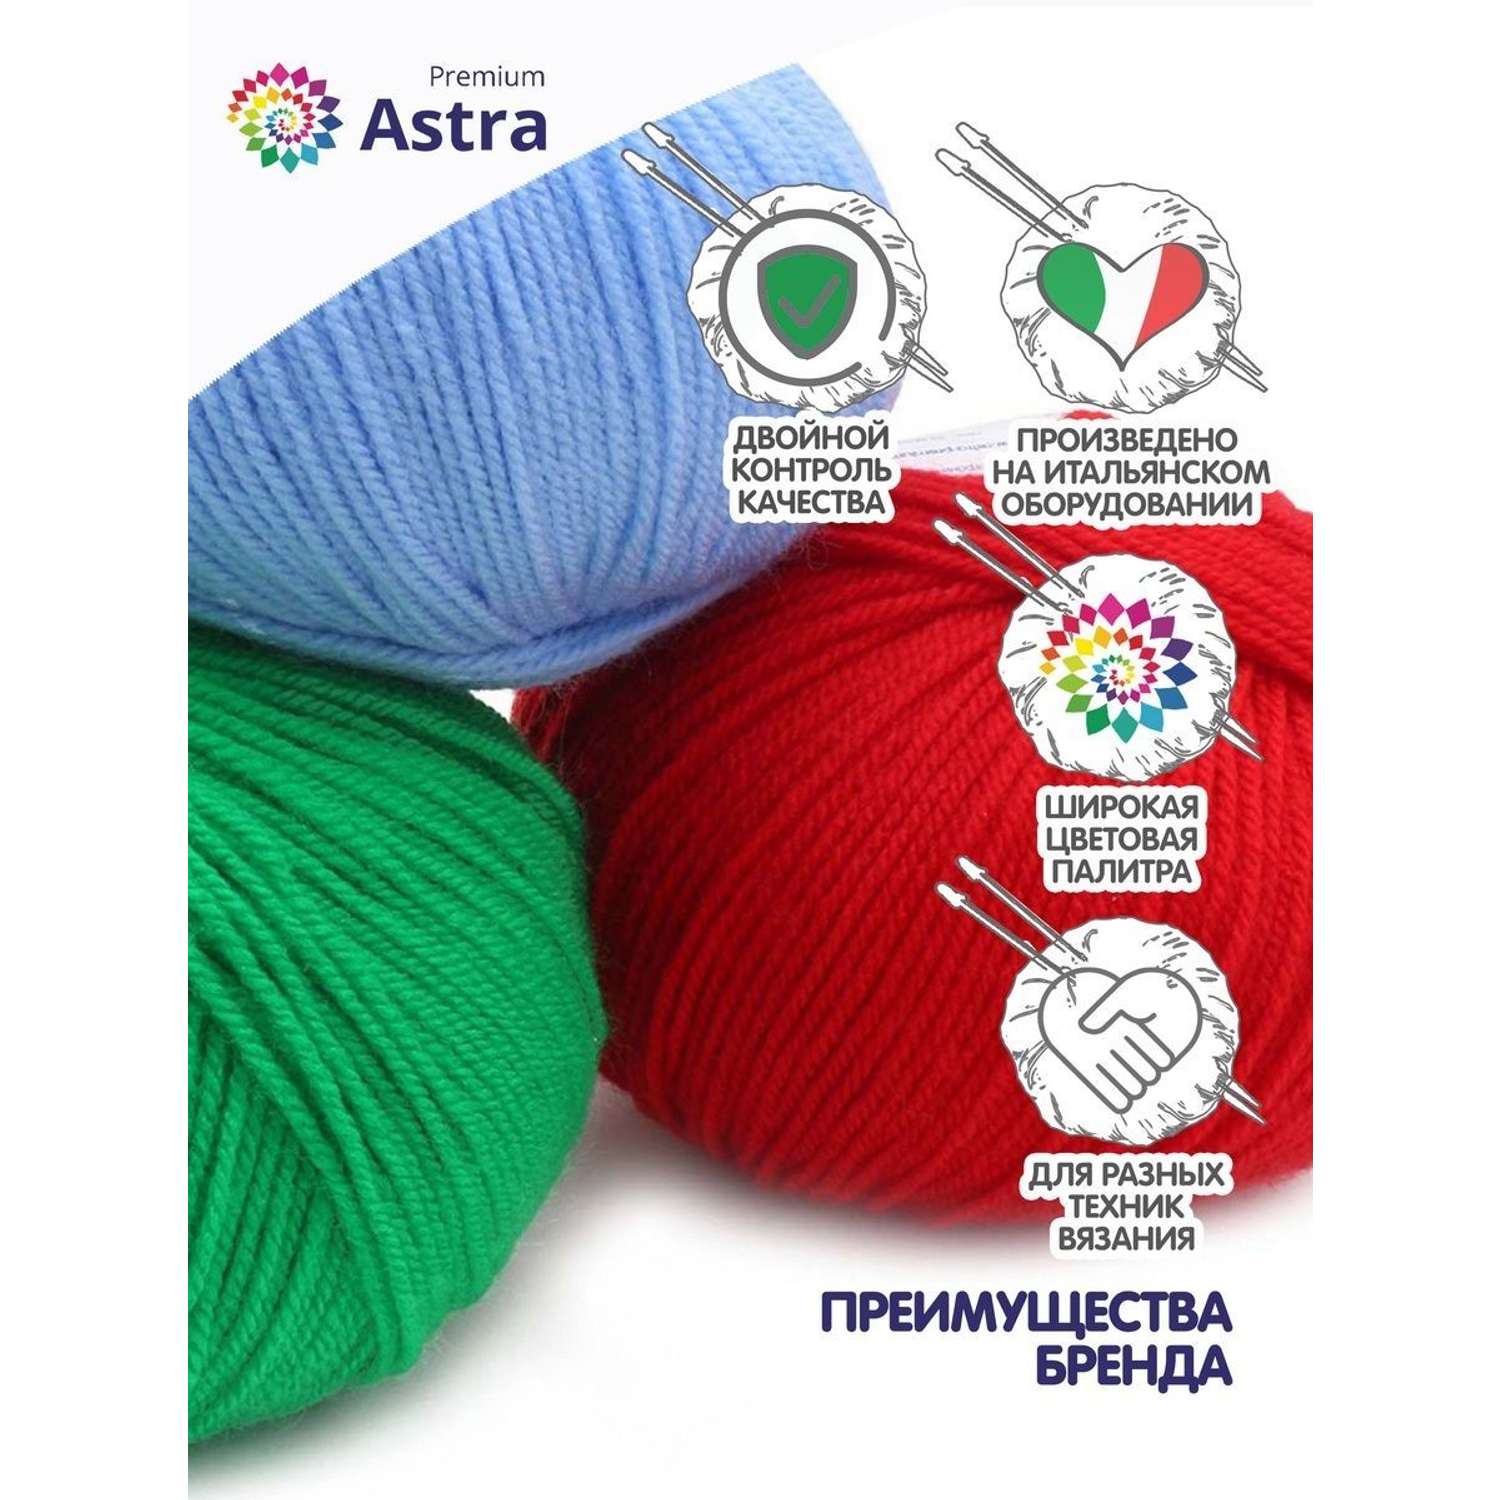 Пряжа для вязания Astra Premium амигуруми акрил для мягких игрушек 50 гр 175 м 044 трава 6 мотков - фото 2